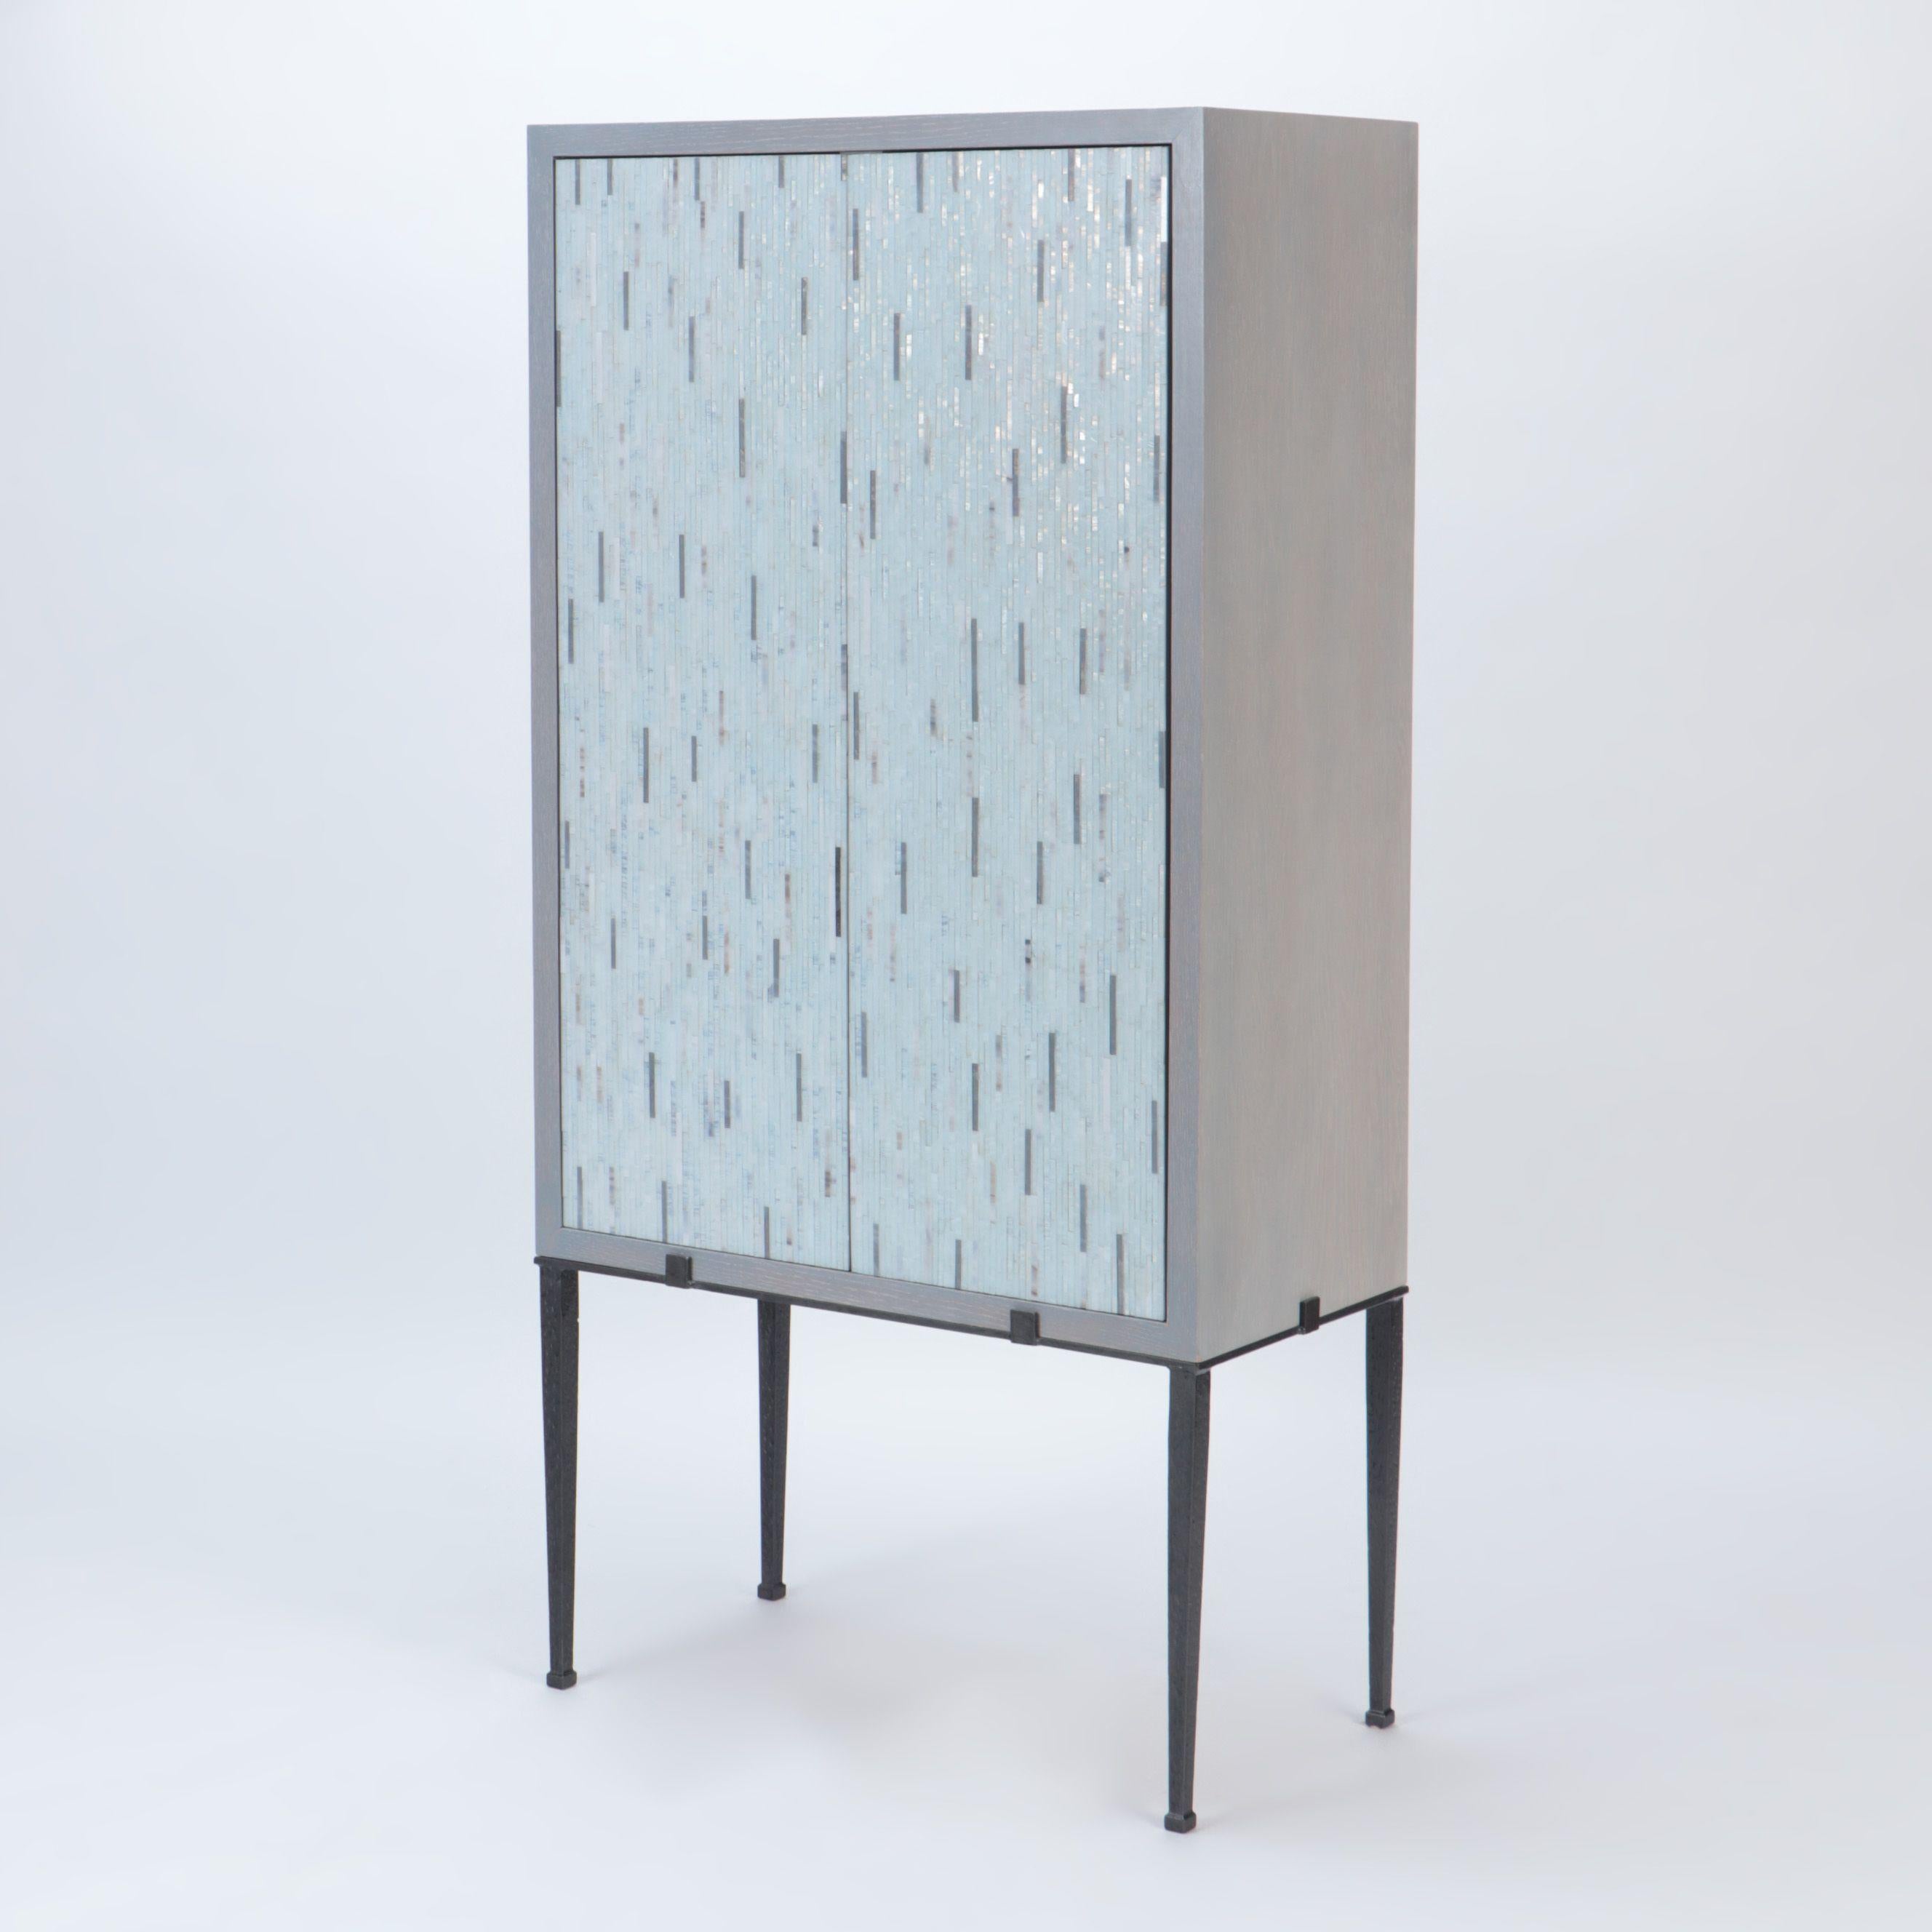 Ein stilvoller maßgefertigter Schrank aus gebrannter Eiche mit Glasmosaik.
Türen und ruht auf einem schwarz lackierten Stahlrahmen.